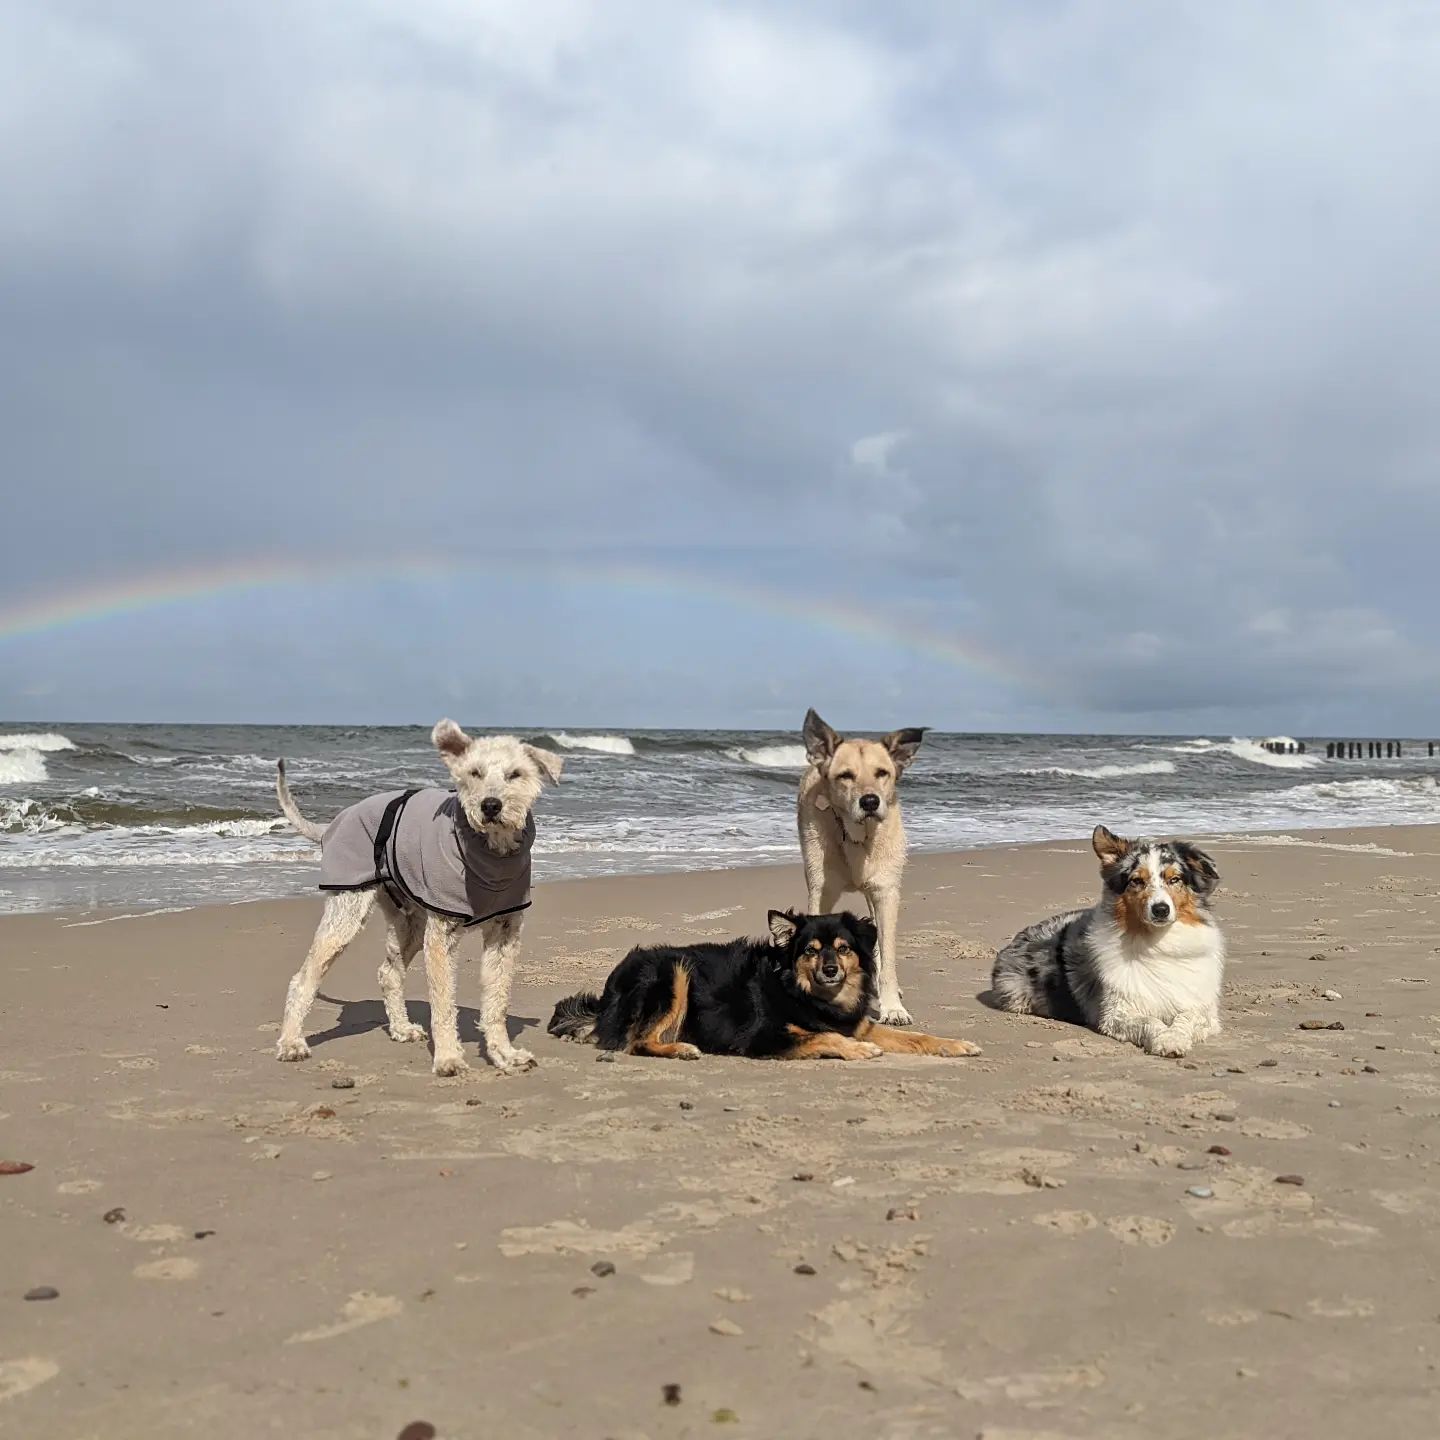 Tęczowe pieski 🌈🐕

#tęczanadmorzem #rainbowoverthesea #teczowepieski #rainbowdogs #pieskieszczęście #doghappiness #psiarodzinka #dogfamily #psiestado #dogpack #kundelkisasuper #mixbreeddogsrock #owczarekaustralijski #bluemerleaussie #zachodniopomorskie #psynadmorzem #dogsbythebay #wakacjezpsami #tripwithdogs #superpsy #superdogs